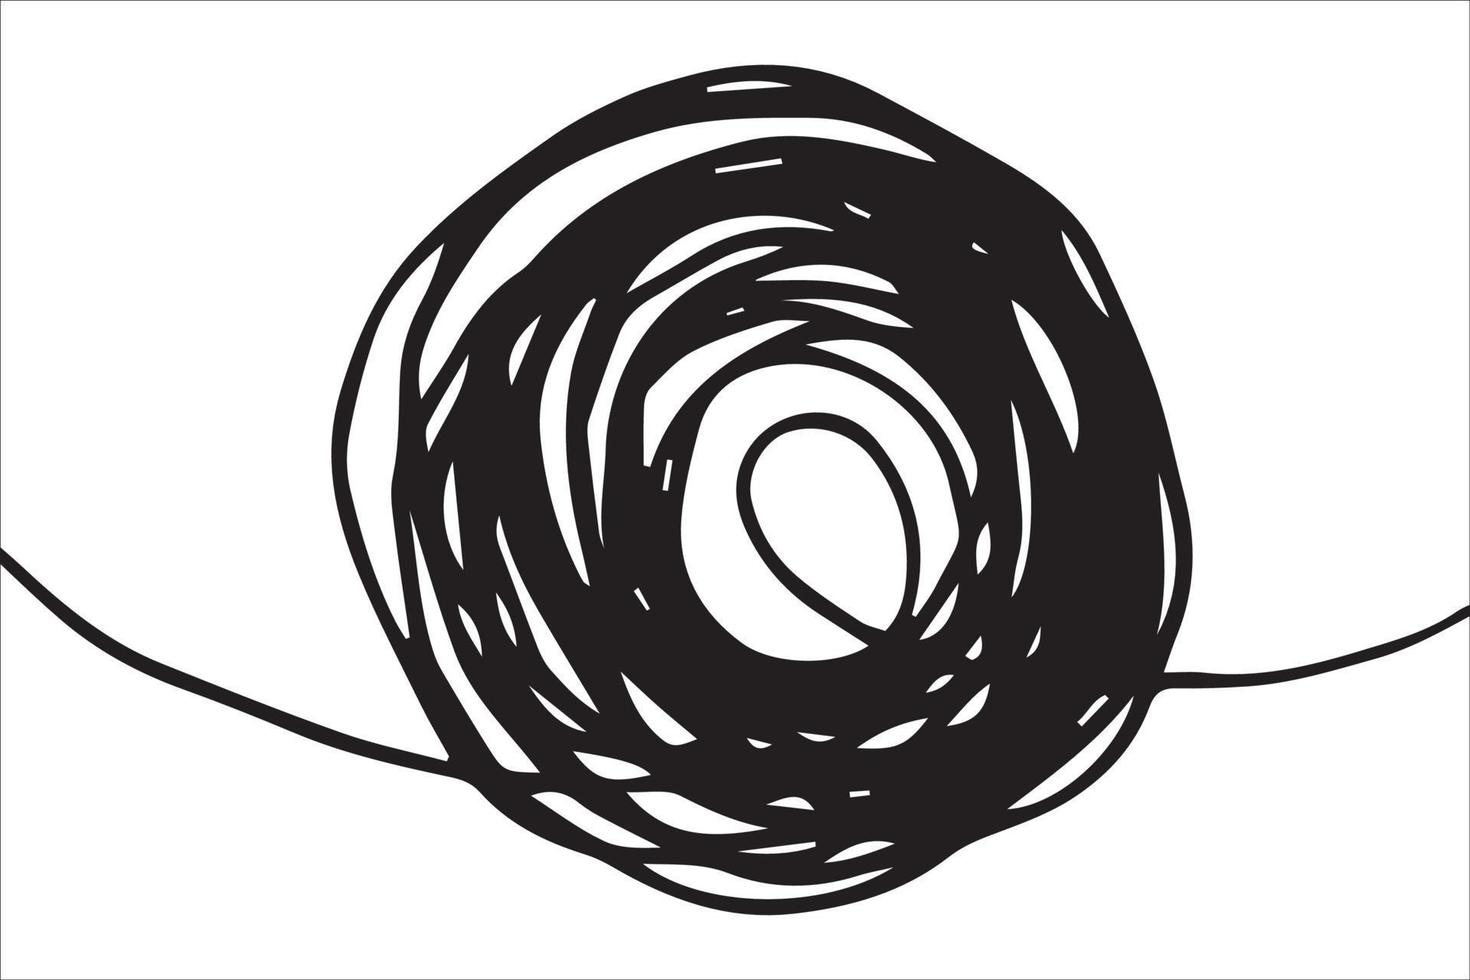 doodle skissartad penna och klottrar isolerad på vit bakgrund .vector illustration vektor